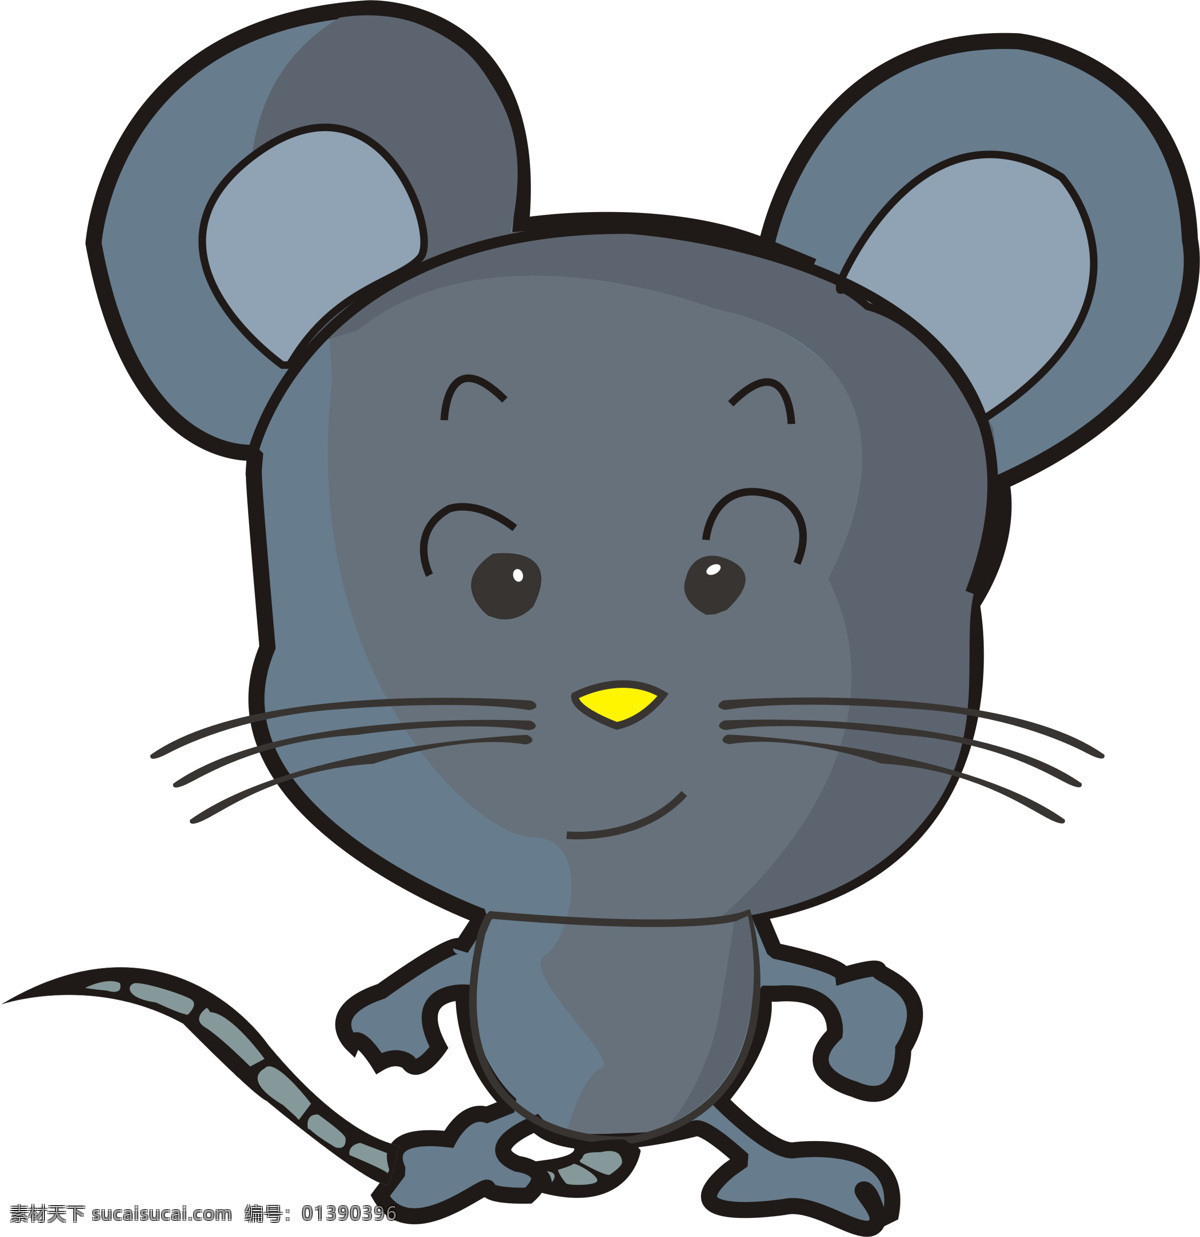 卡通 小 老鼠 卡通动物 卡通图片 卡通图片素材 可爱 的卡 通 动漫